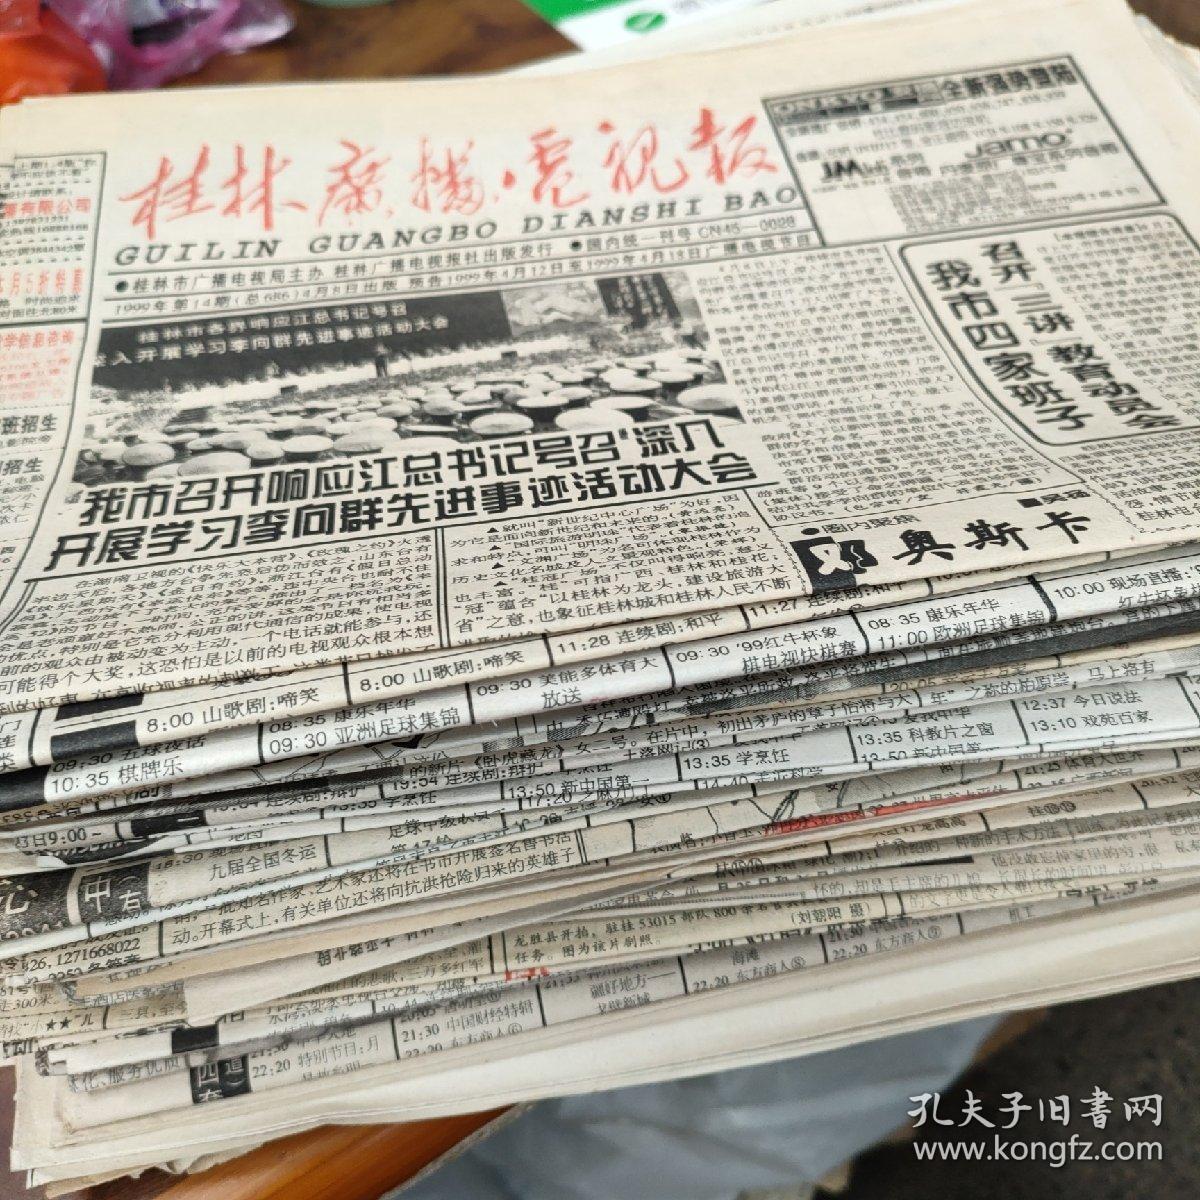 桂林广播电视报 1990年1份，1991年3份，92年3份，93年8份，94年11份，95年13份，96年10份，97年8份，98年21份，99年27份共105份合售